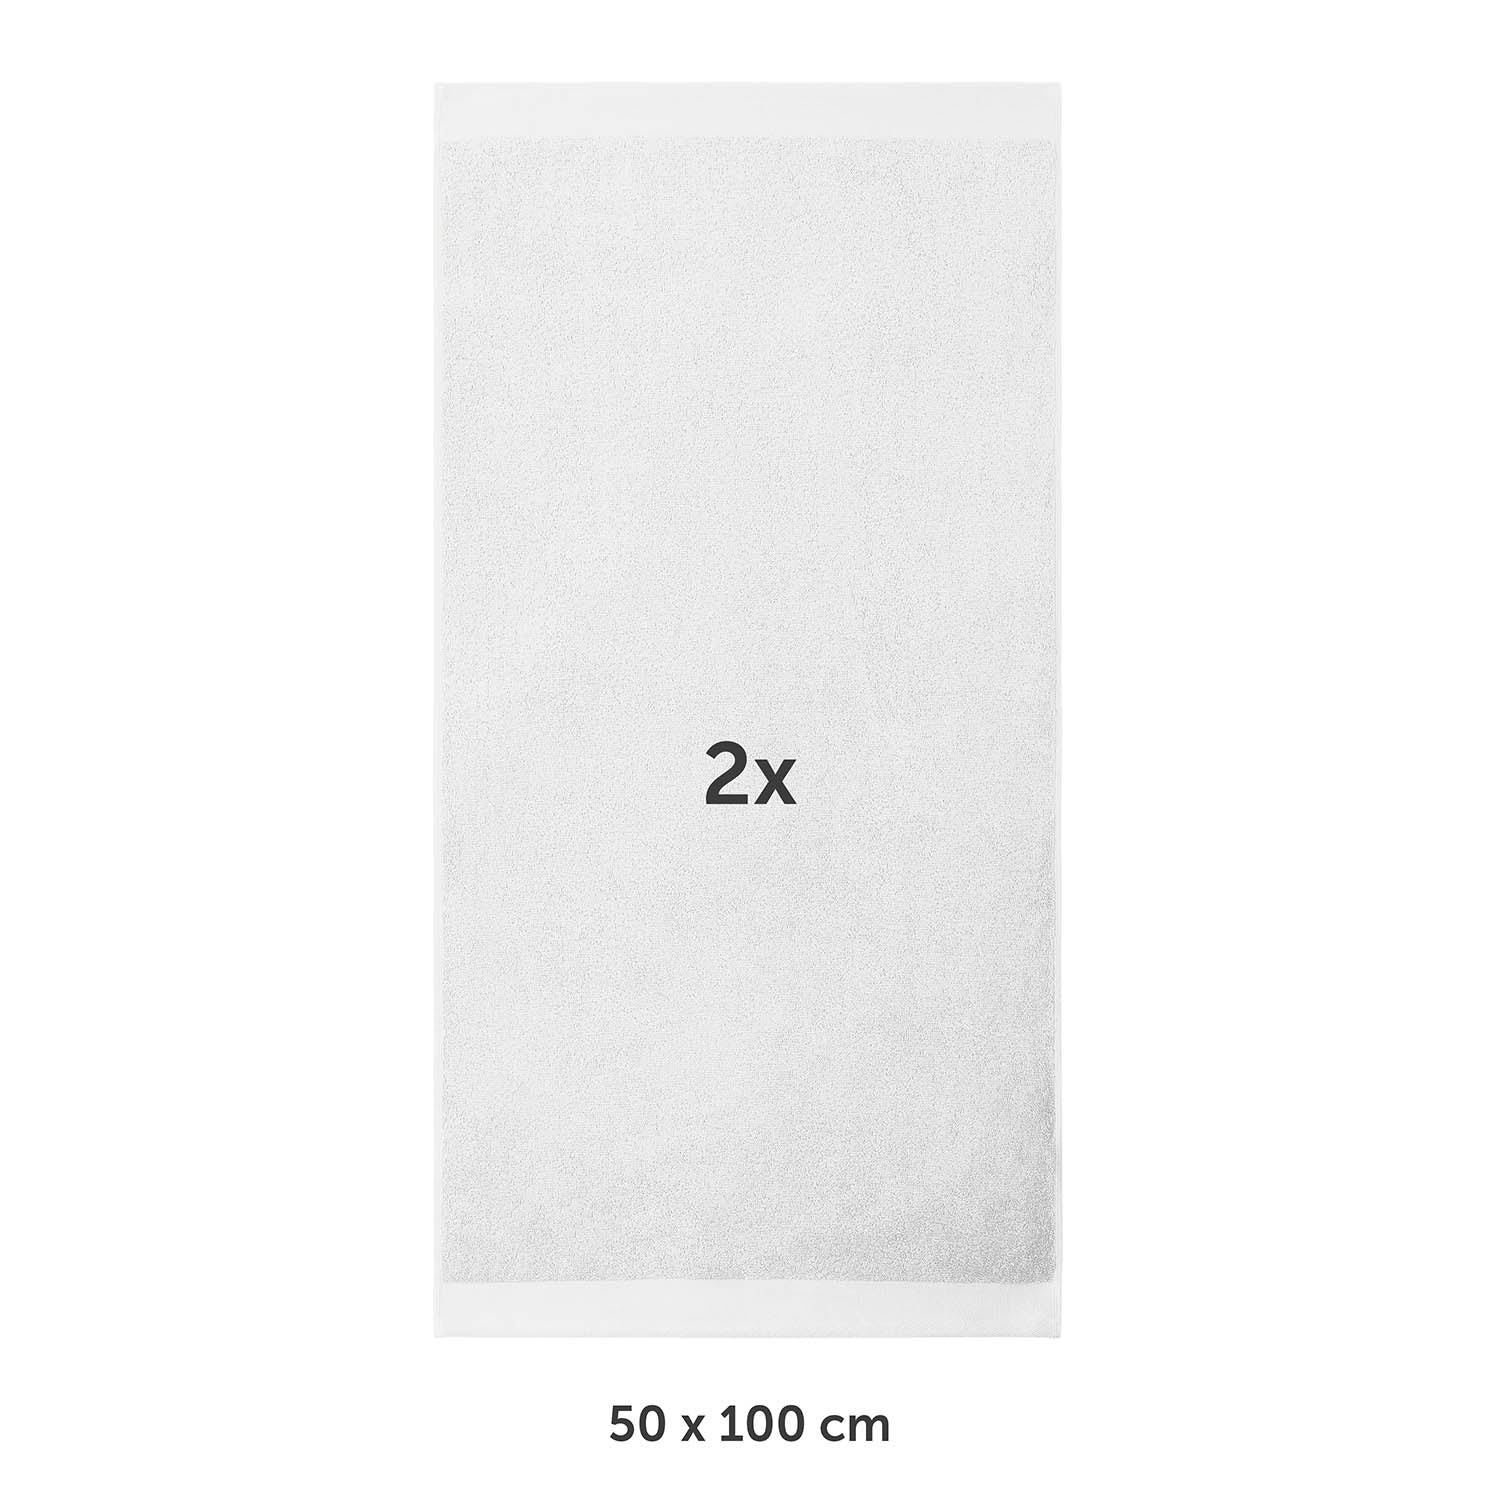 Handtuch flach ausgebreitet mit Markierung 2x und Maßangabe 50 x 100 cm in weißer Schrif